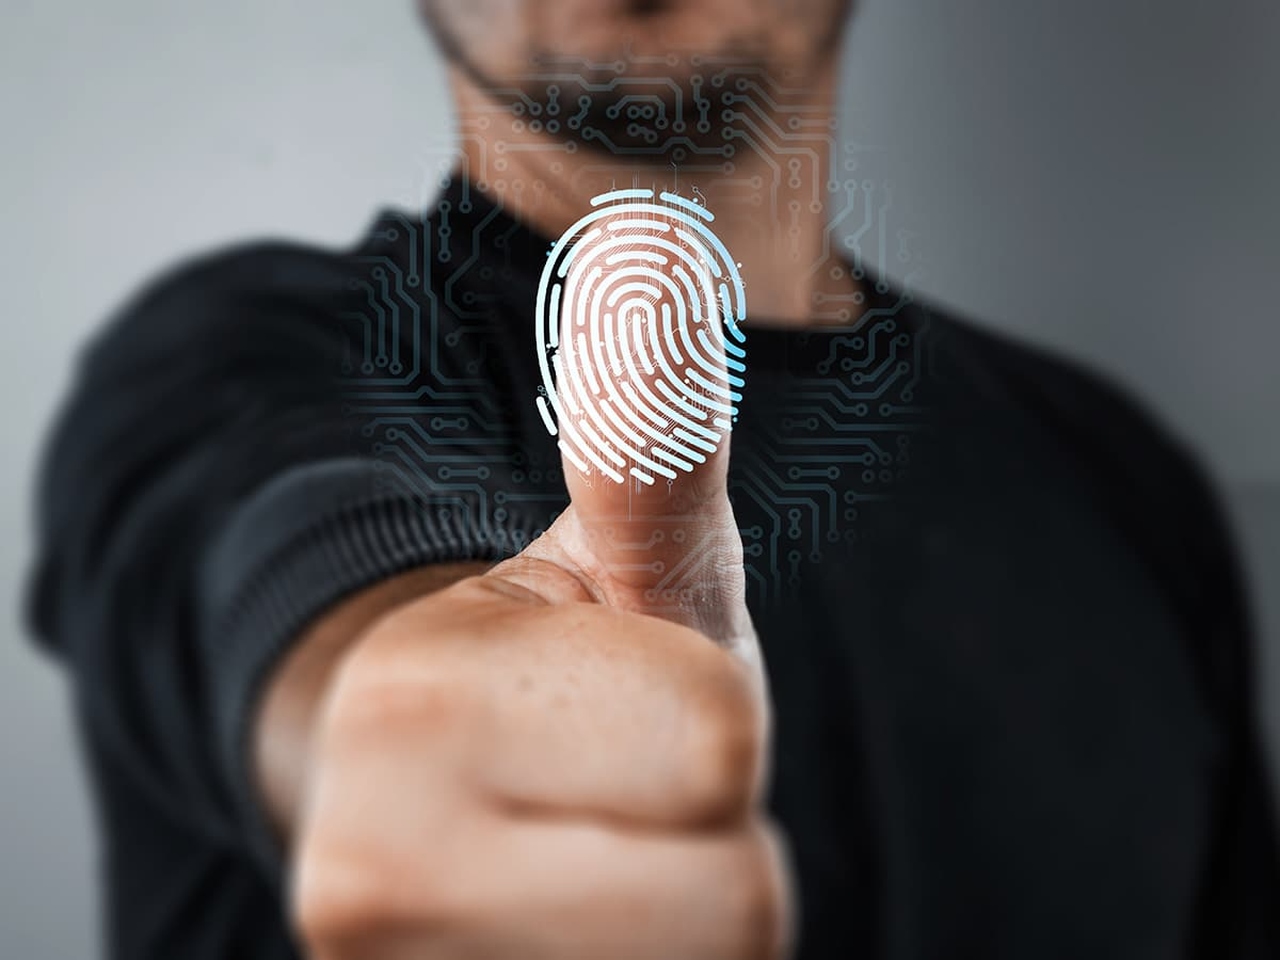 Fraudes impulsionam indústria de verificação de identidade - Revista Security